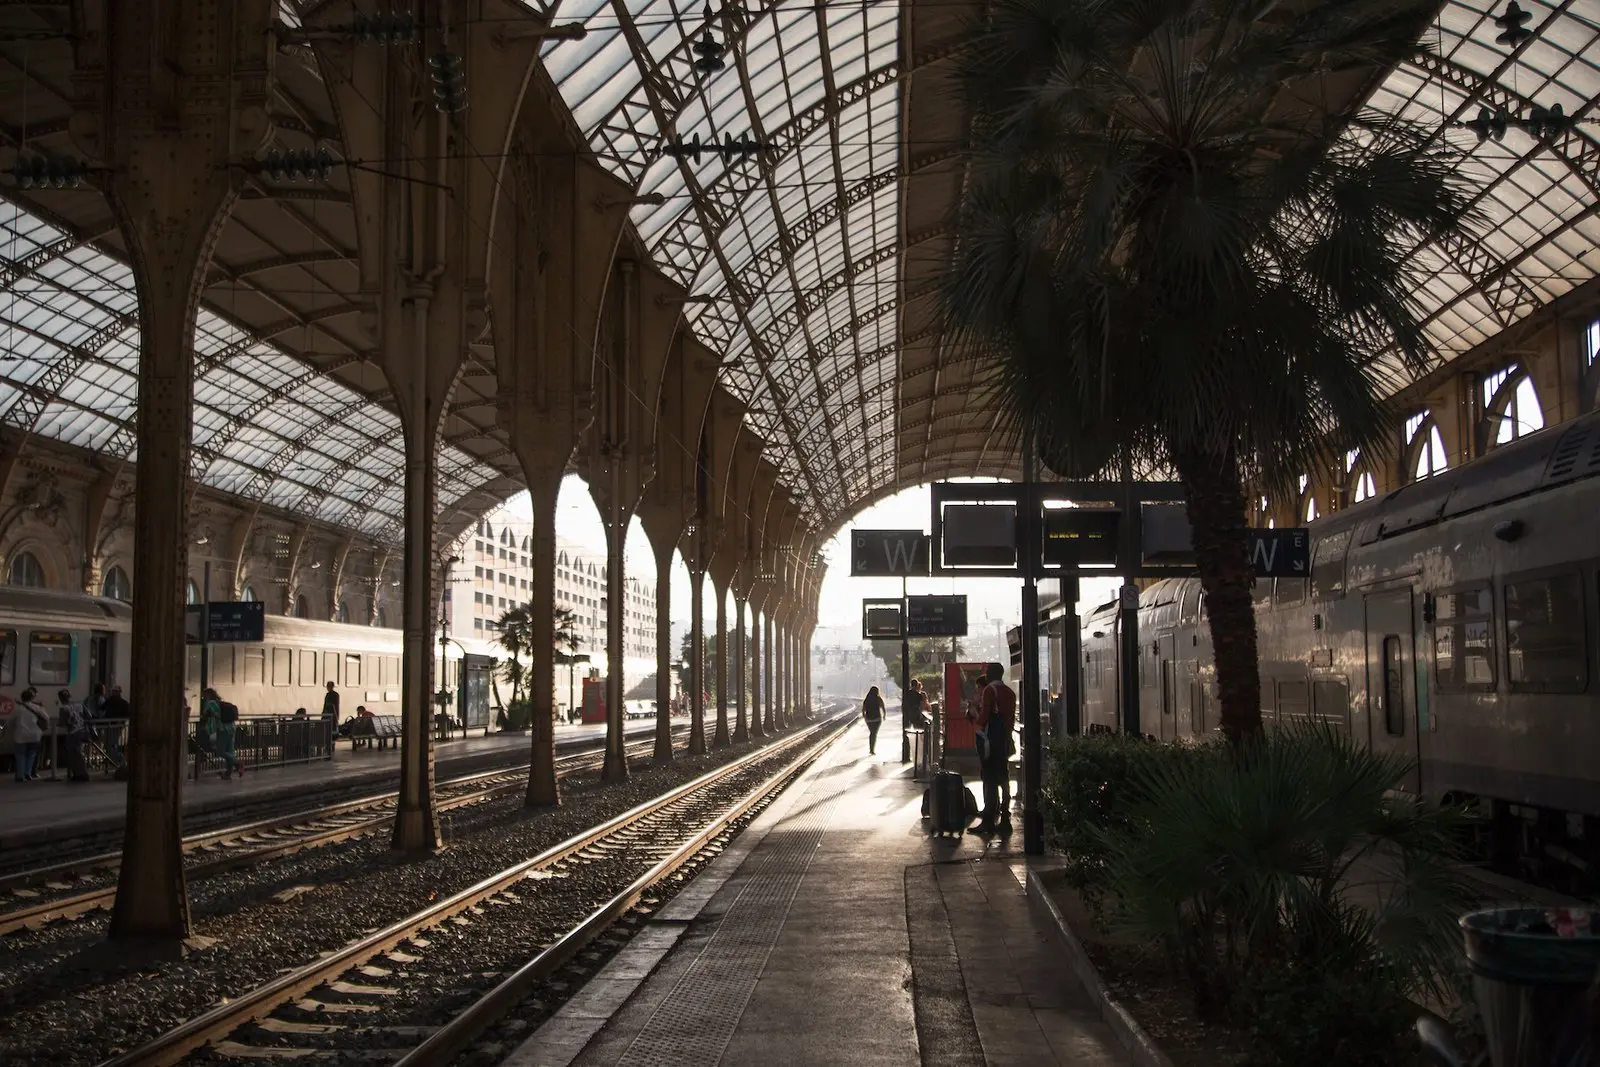 estacion de tren nice ville - Cómo se llama la estación de tren de Nice